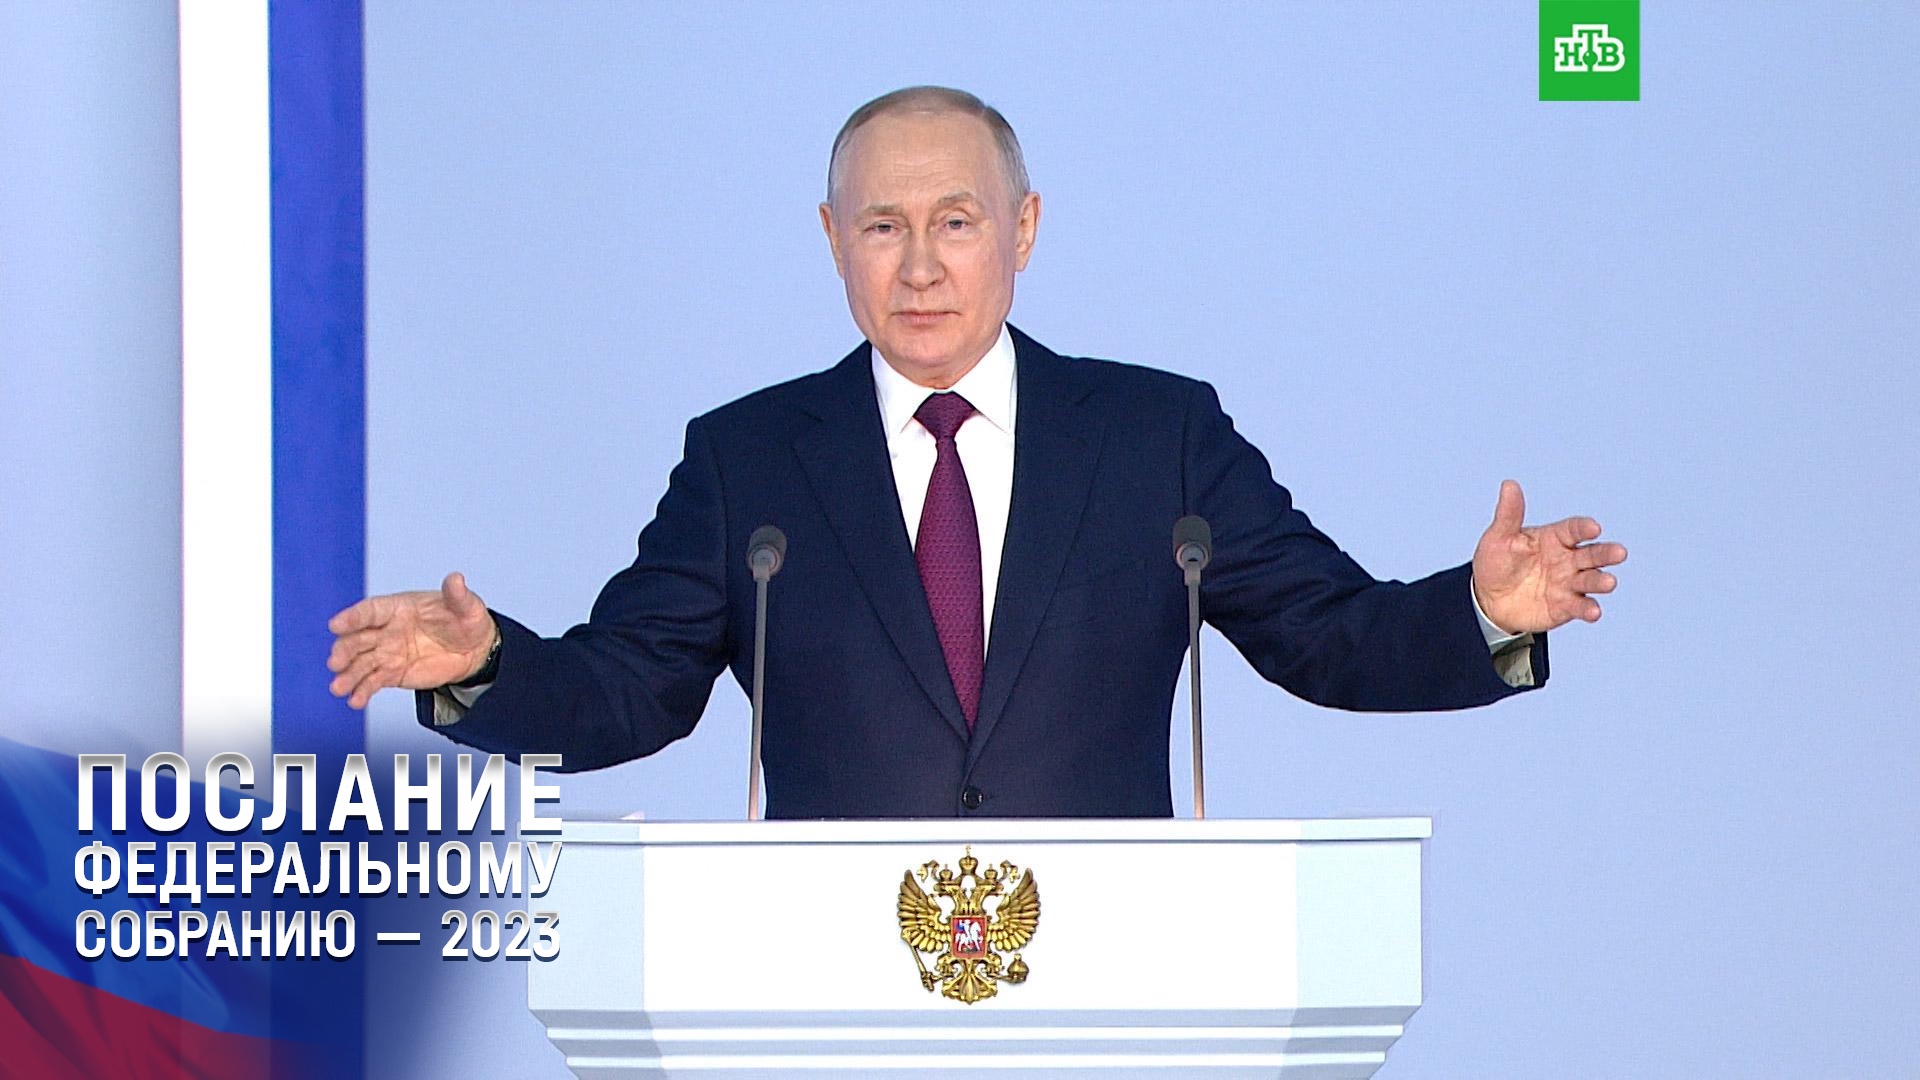 Путин: Россия защитит своих детей от духовной деградации и вырождения